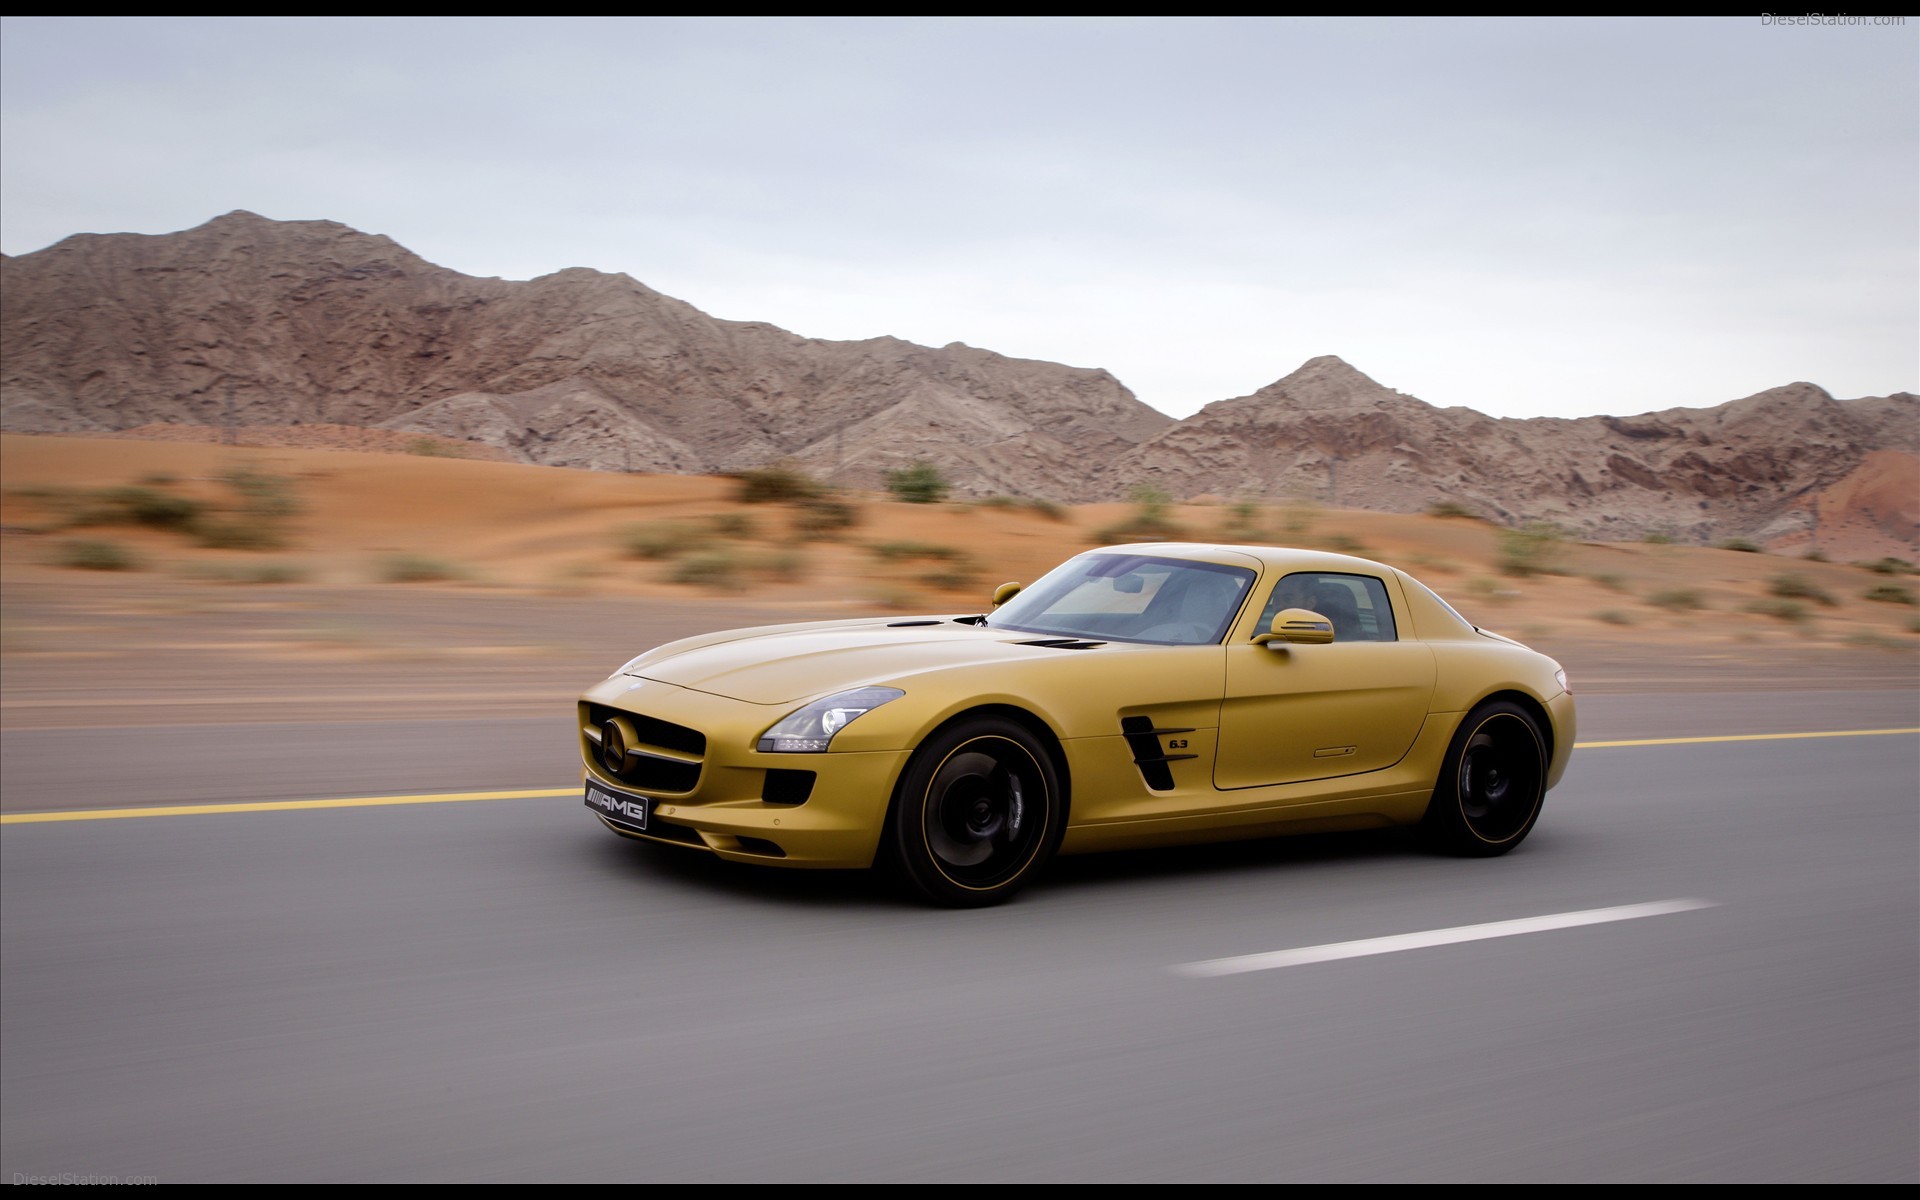 Mercedes Benz Sls Amg Desert Gold Widescreen Exotic